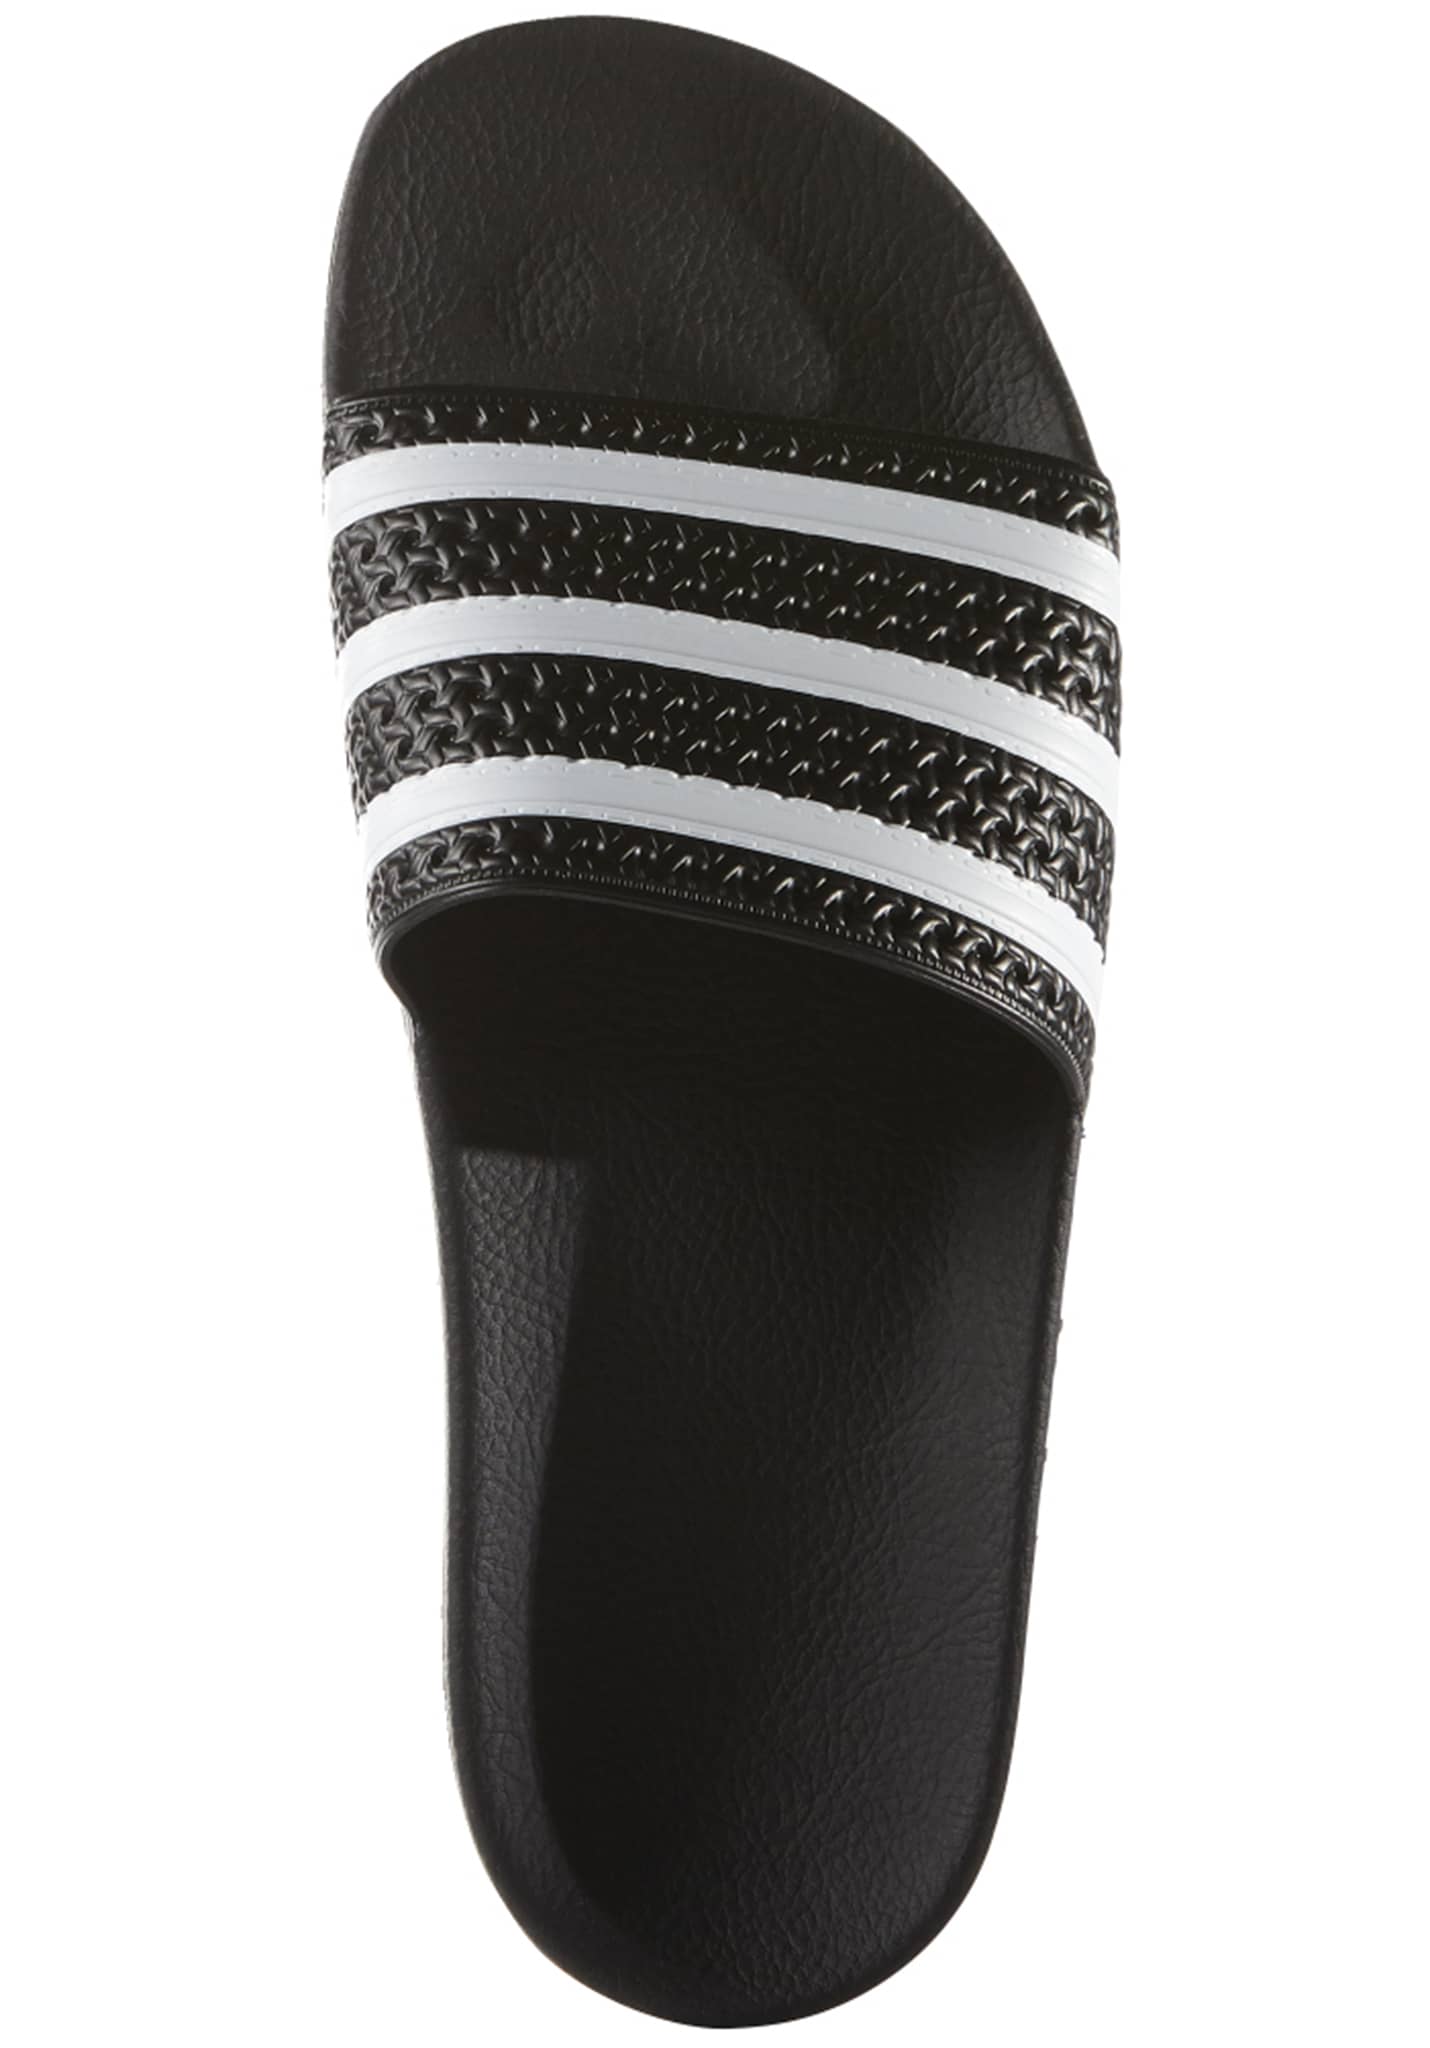 Adidas Originals ADIDAS ORIGINALS Adilette core black/white/core black 47 Strandsandalen / Flip-Flop / Thongs Pantoletten core black/white/core black 43